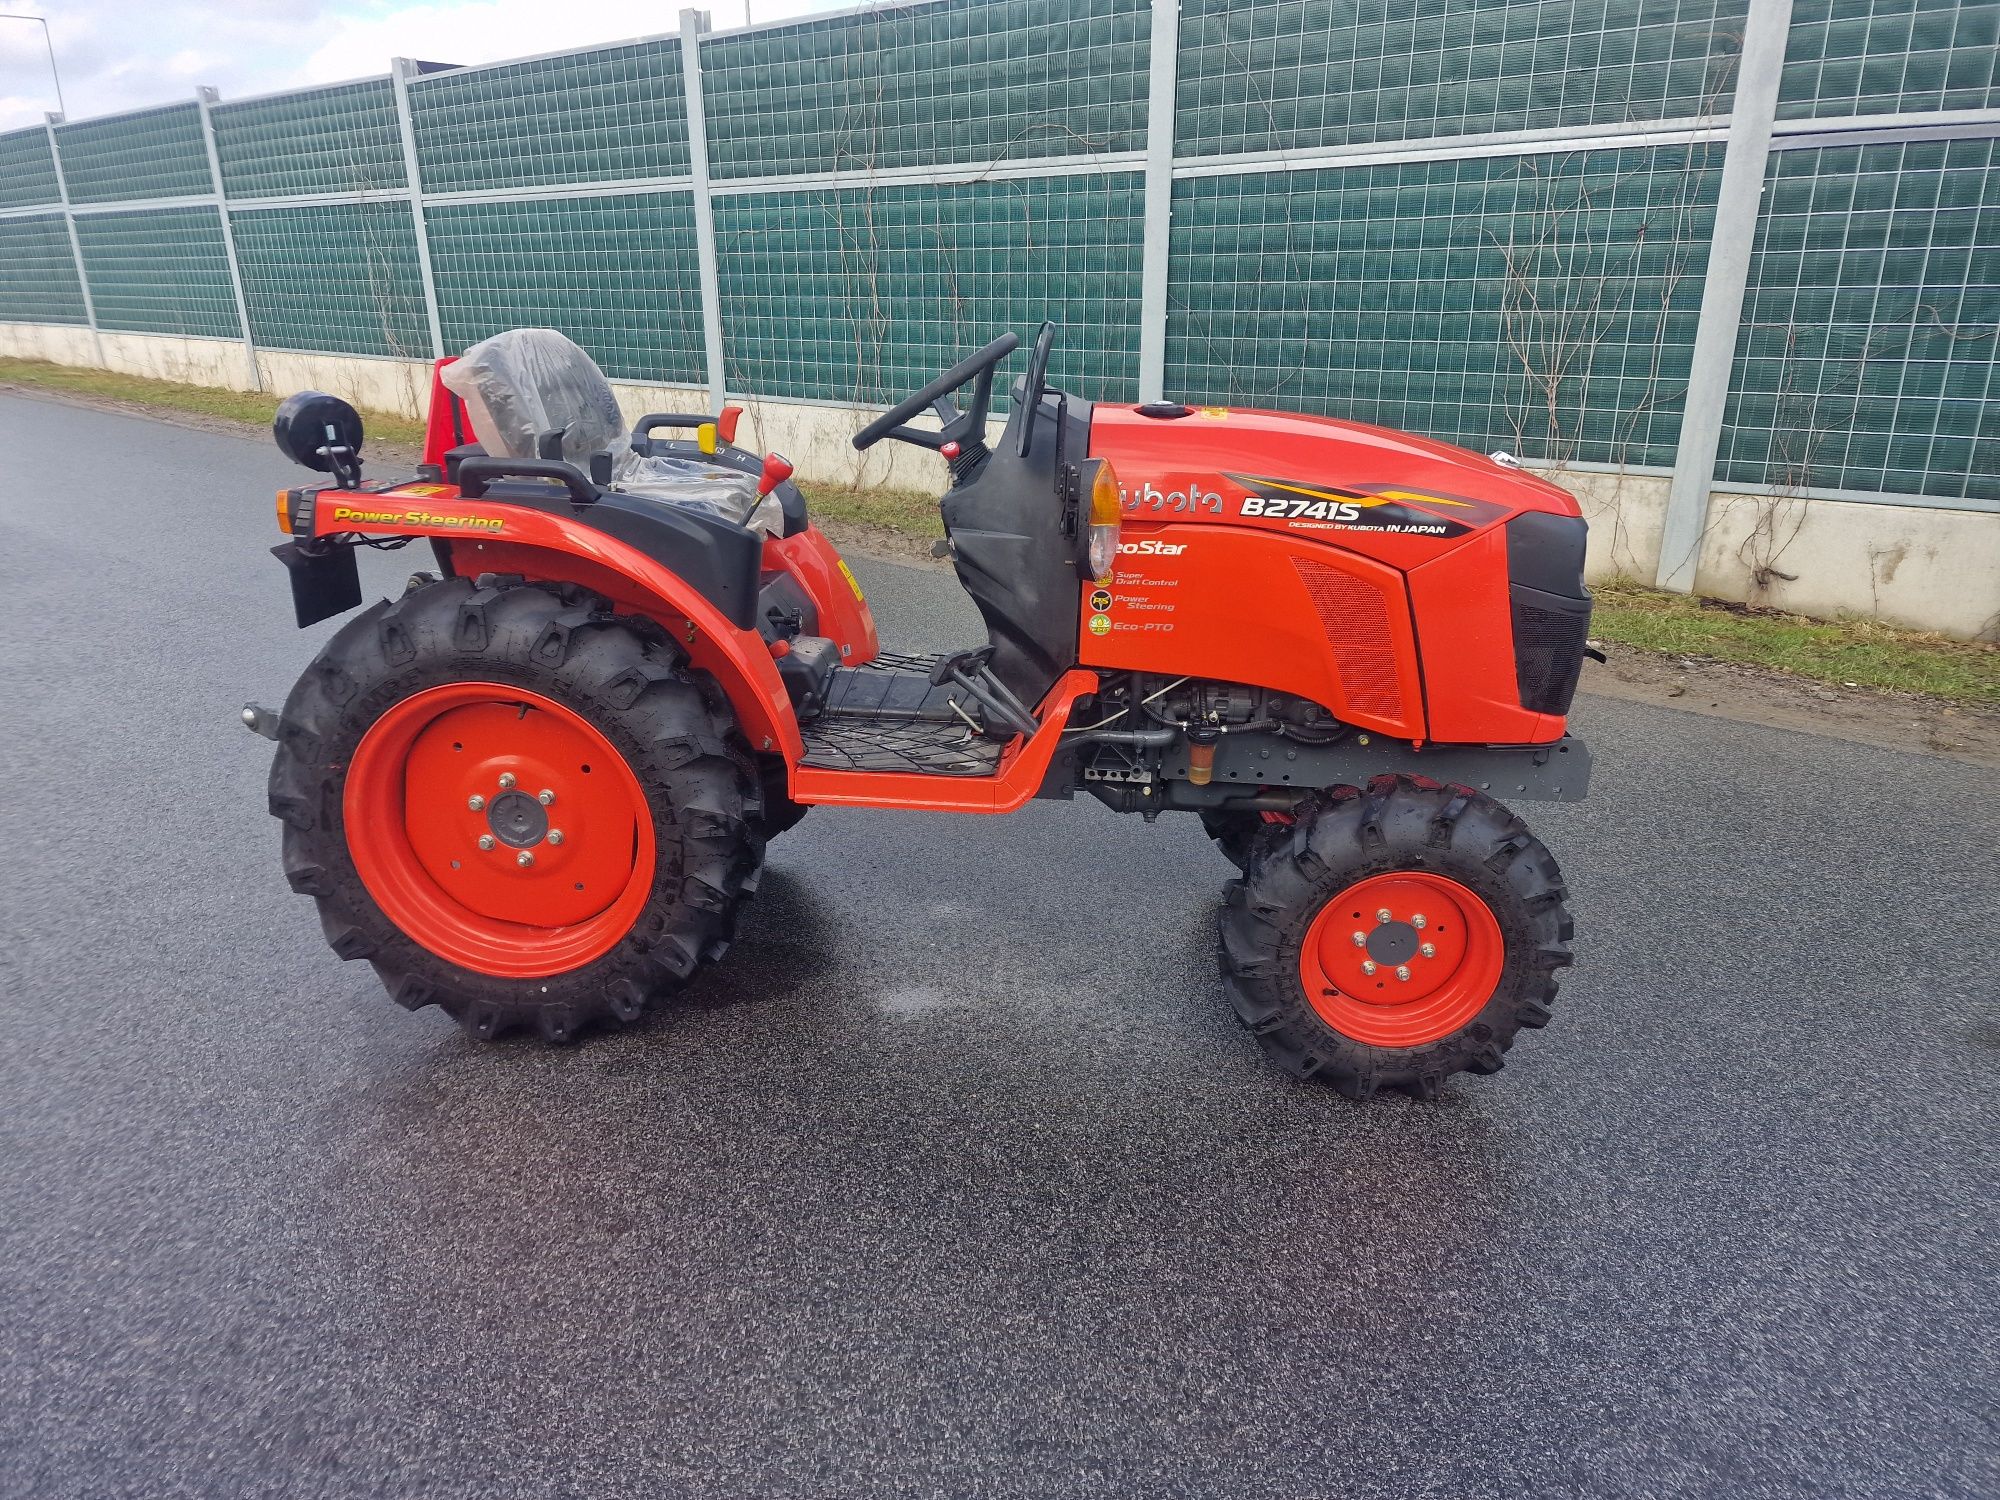 Traktorek  Kubota B2741S fabrycznie nowy